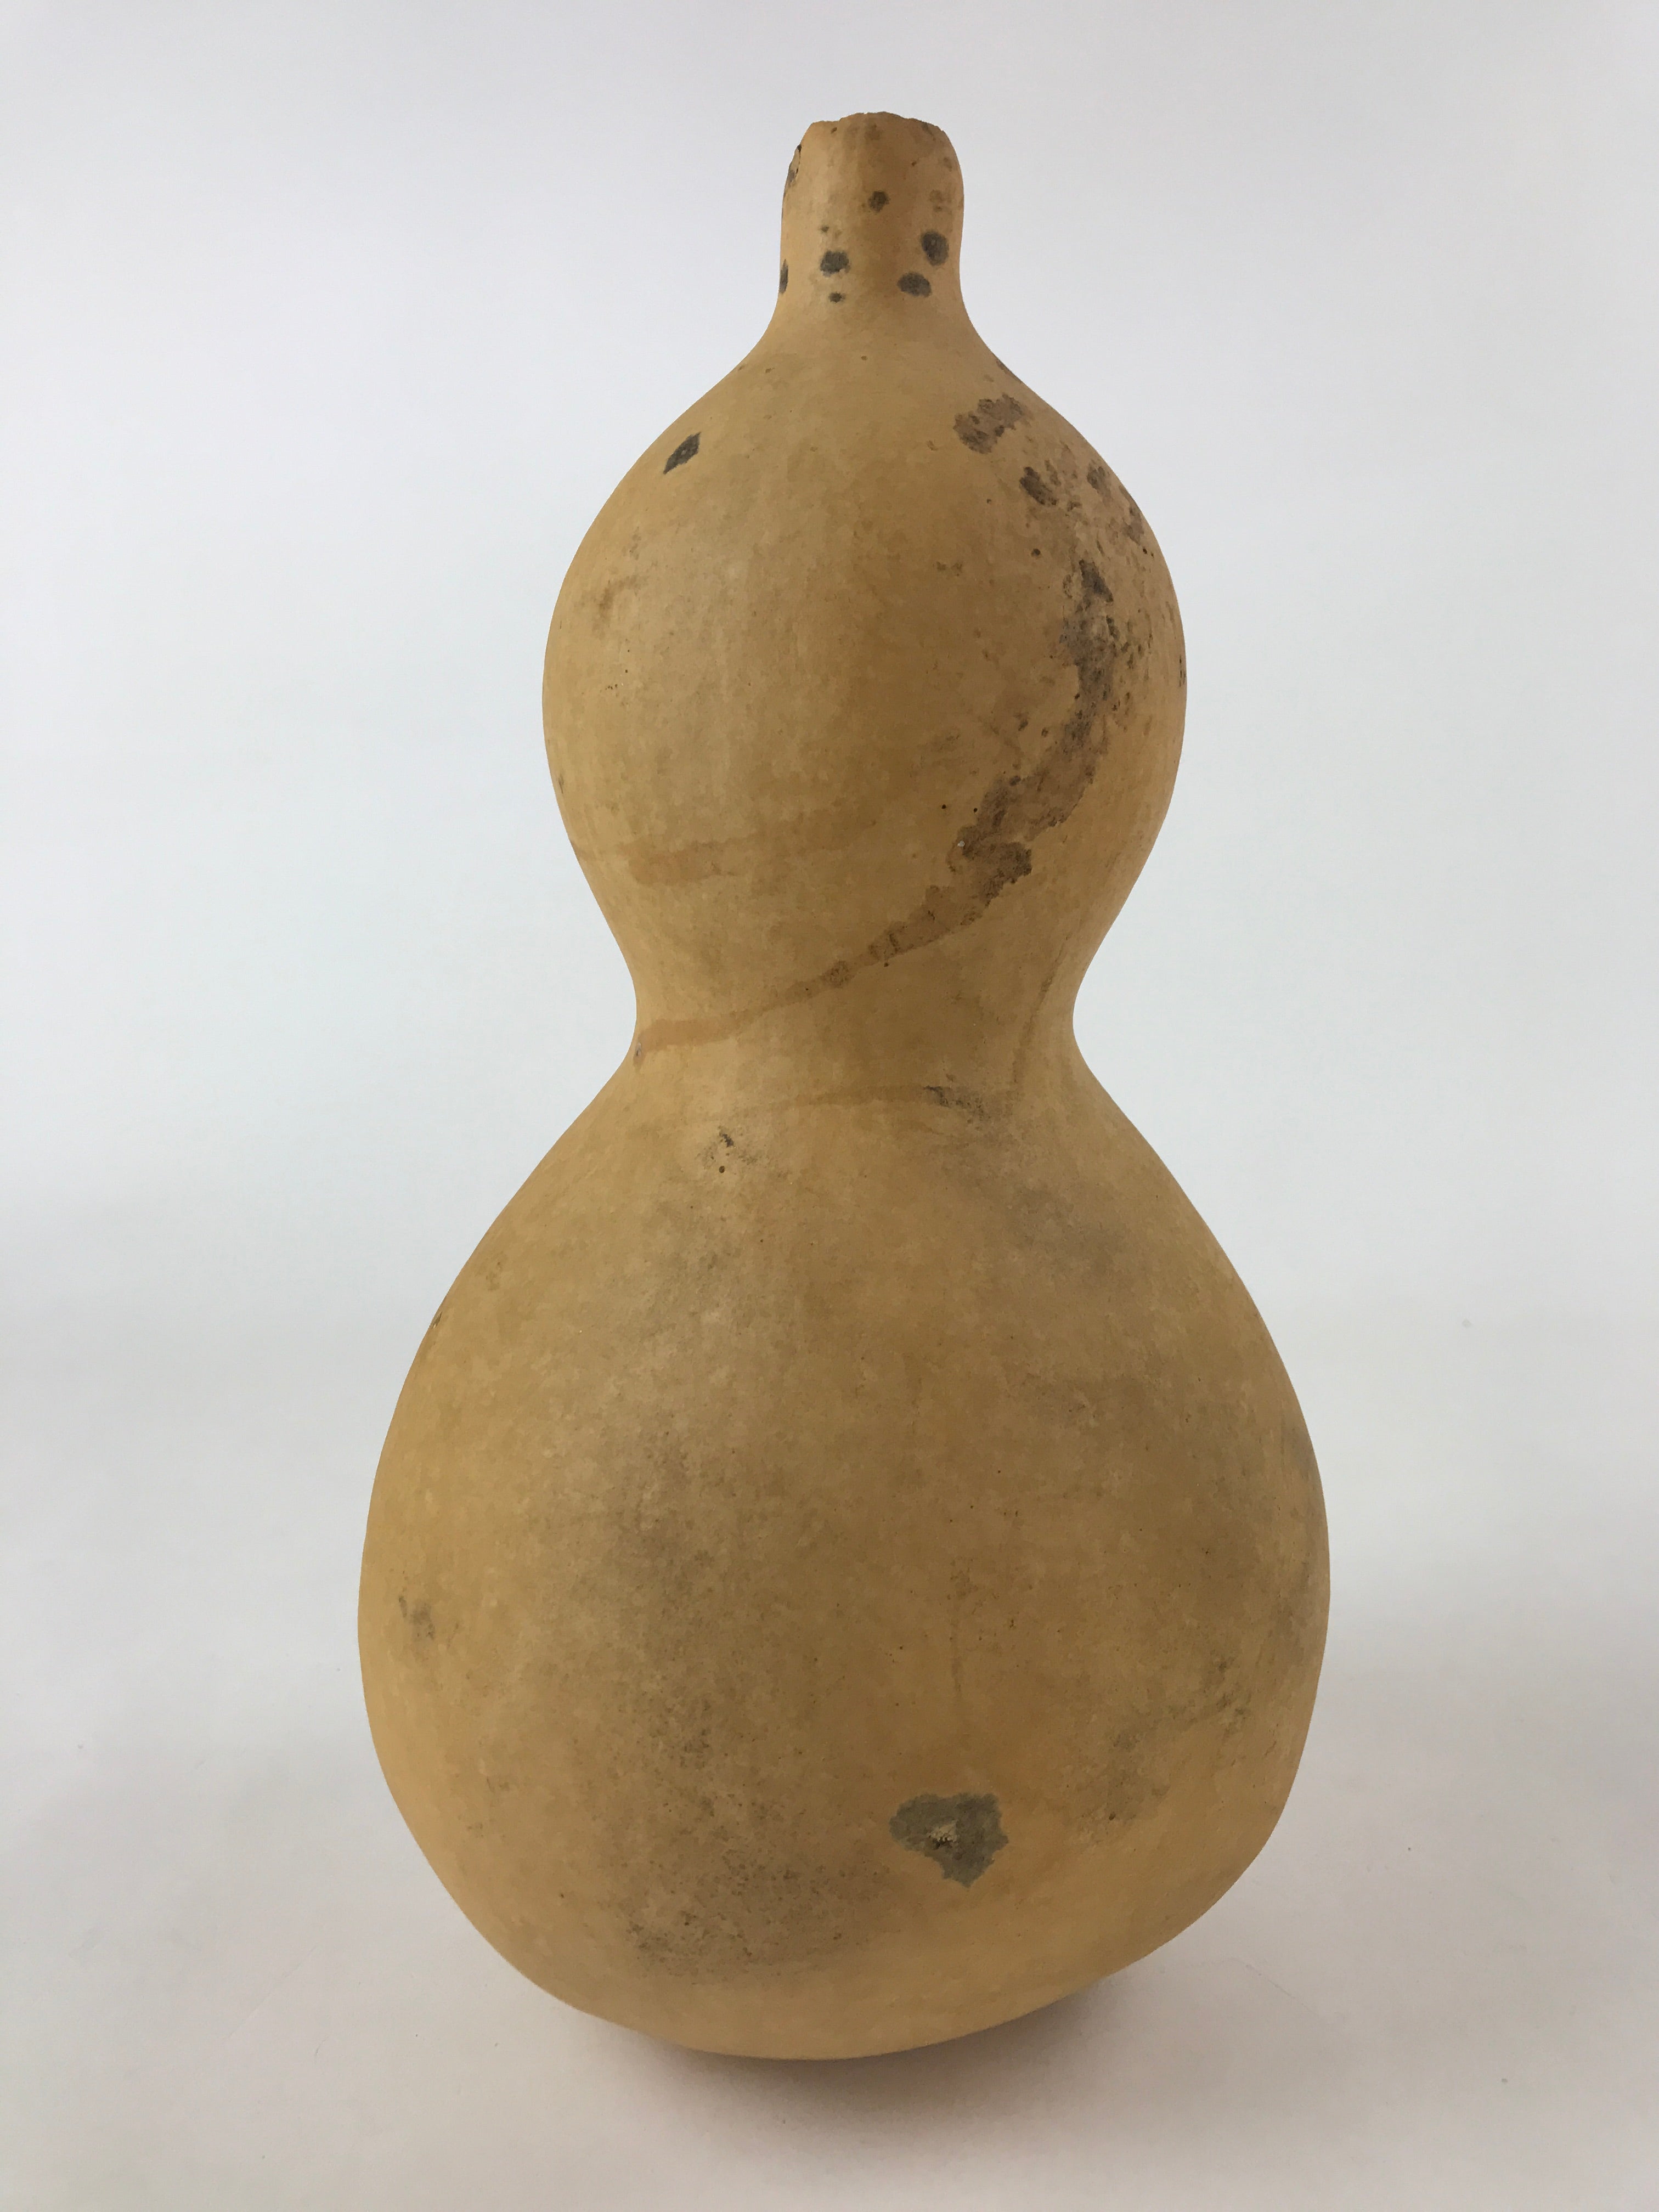 Japanese Natural Hyotan Gourd Vtg Sake Bottle Lucky Charm Large Calabash G249